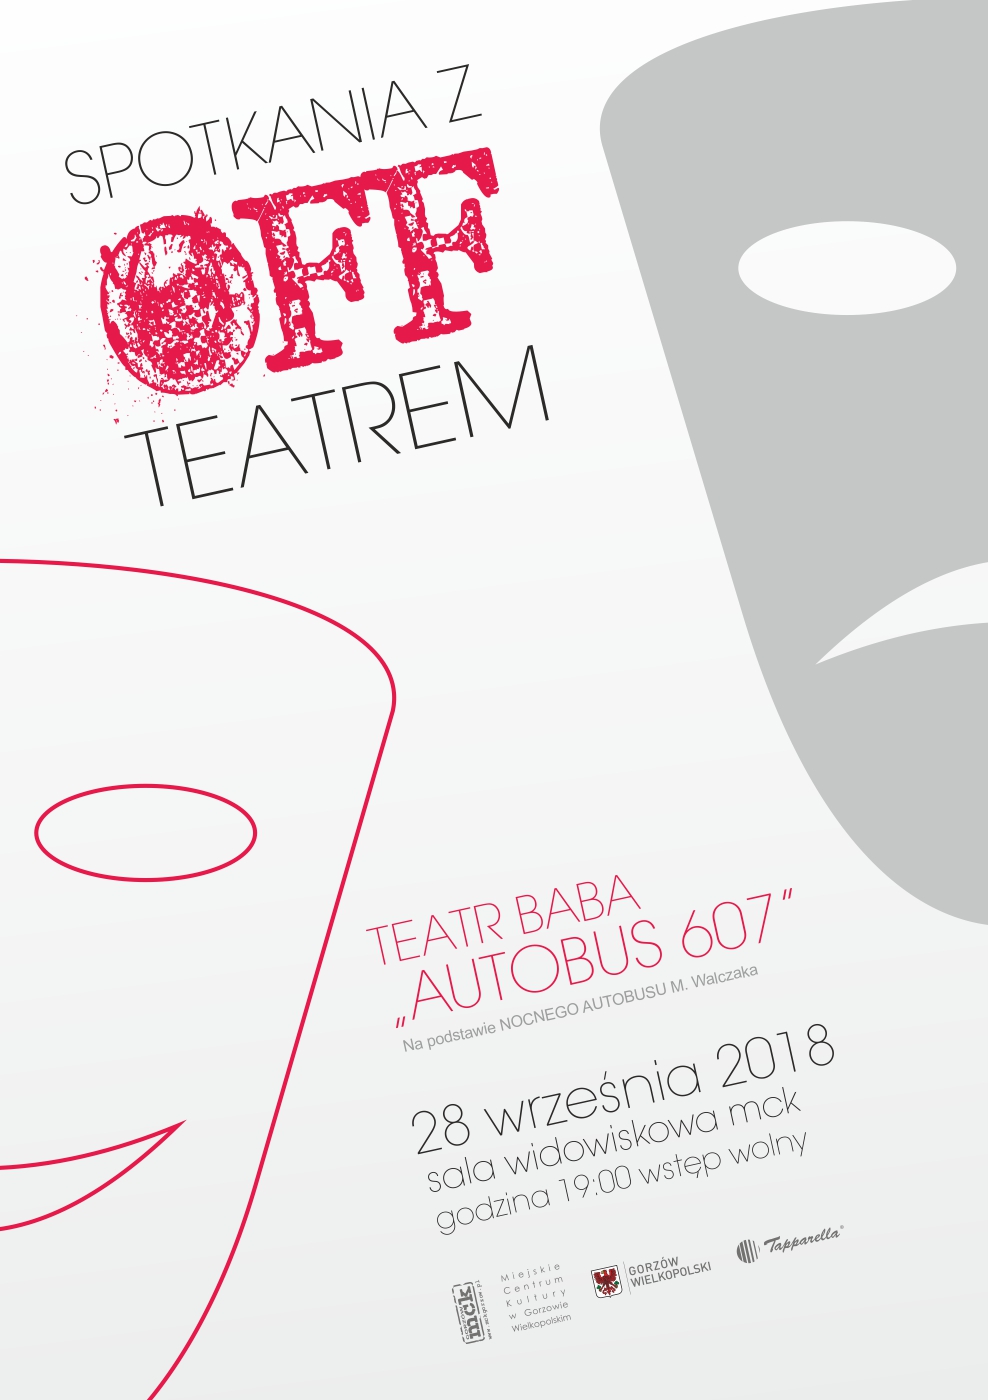 Grafika wydarzenia „Spotkania z Offteatrem” – Teatr BABA